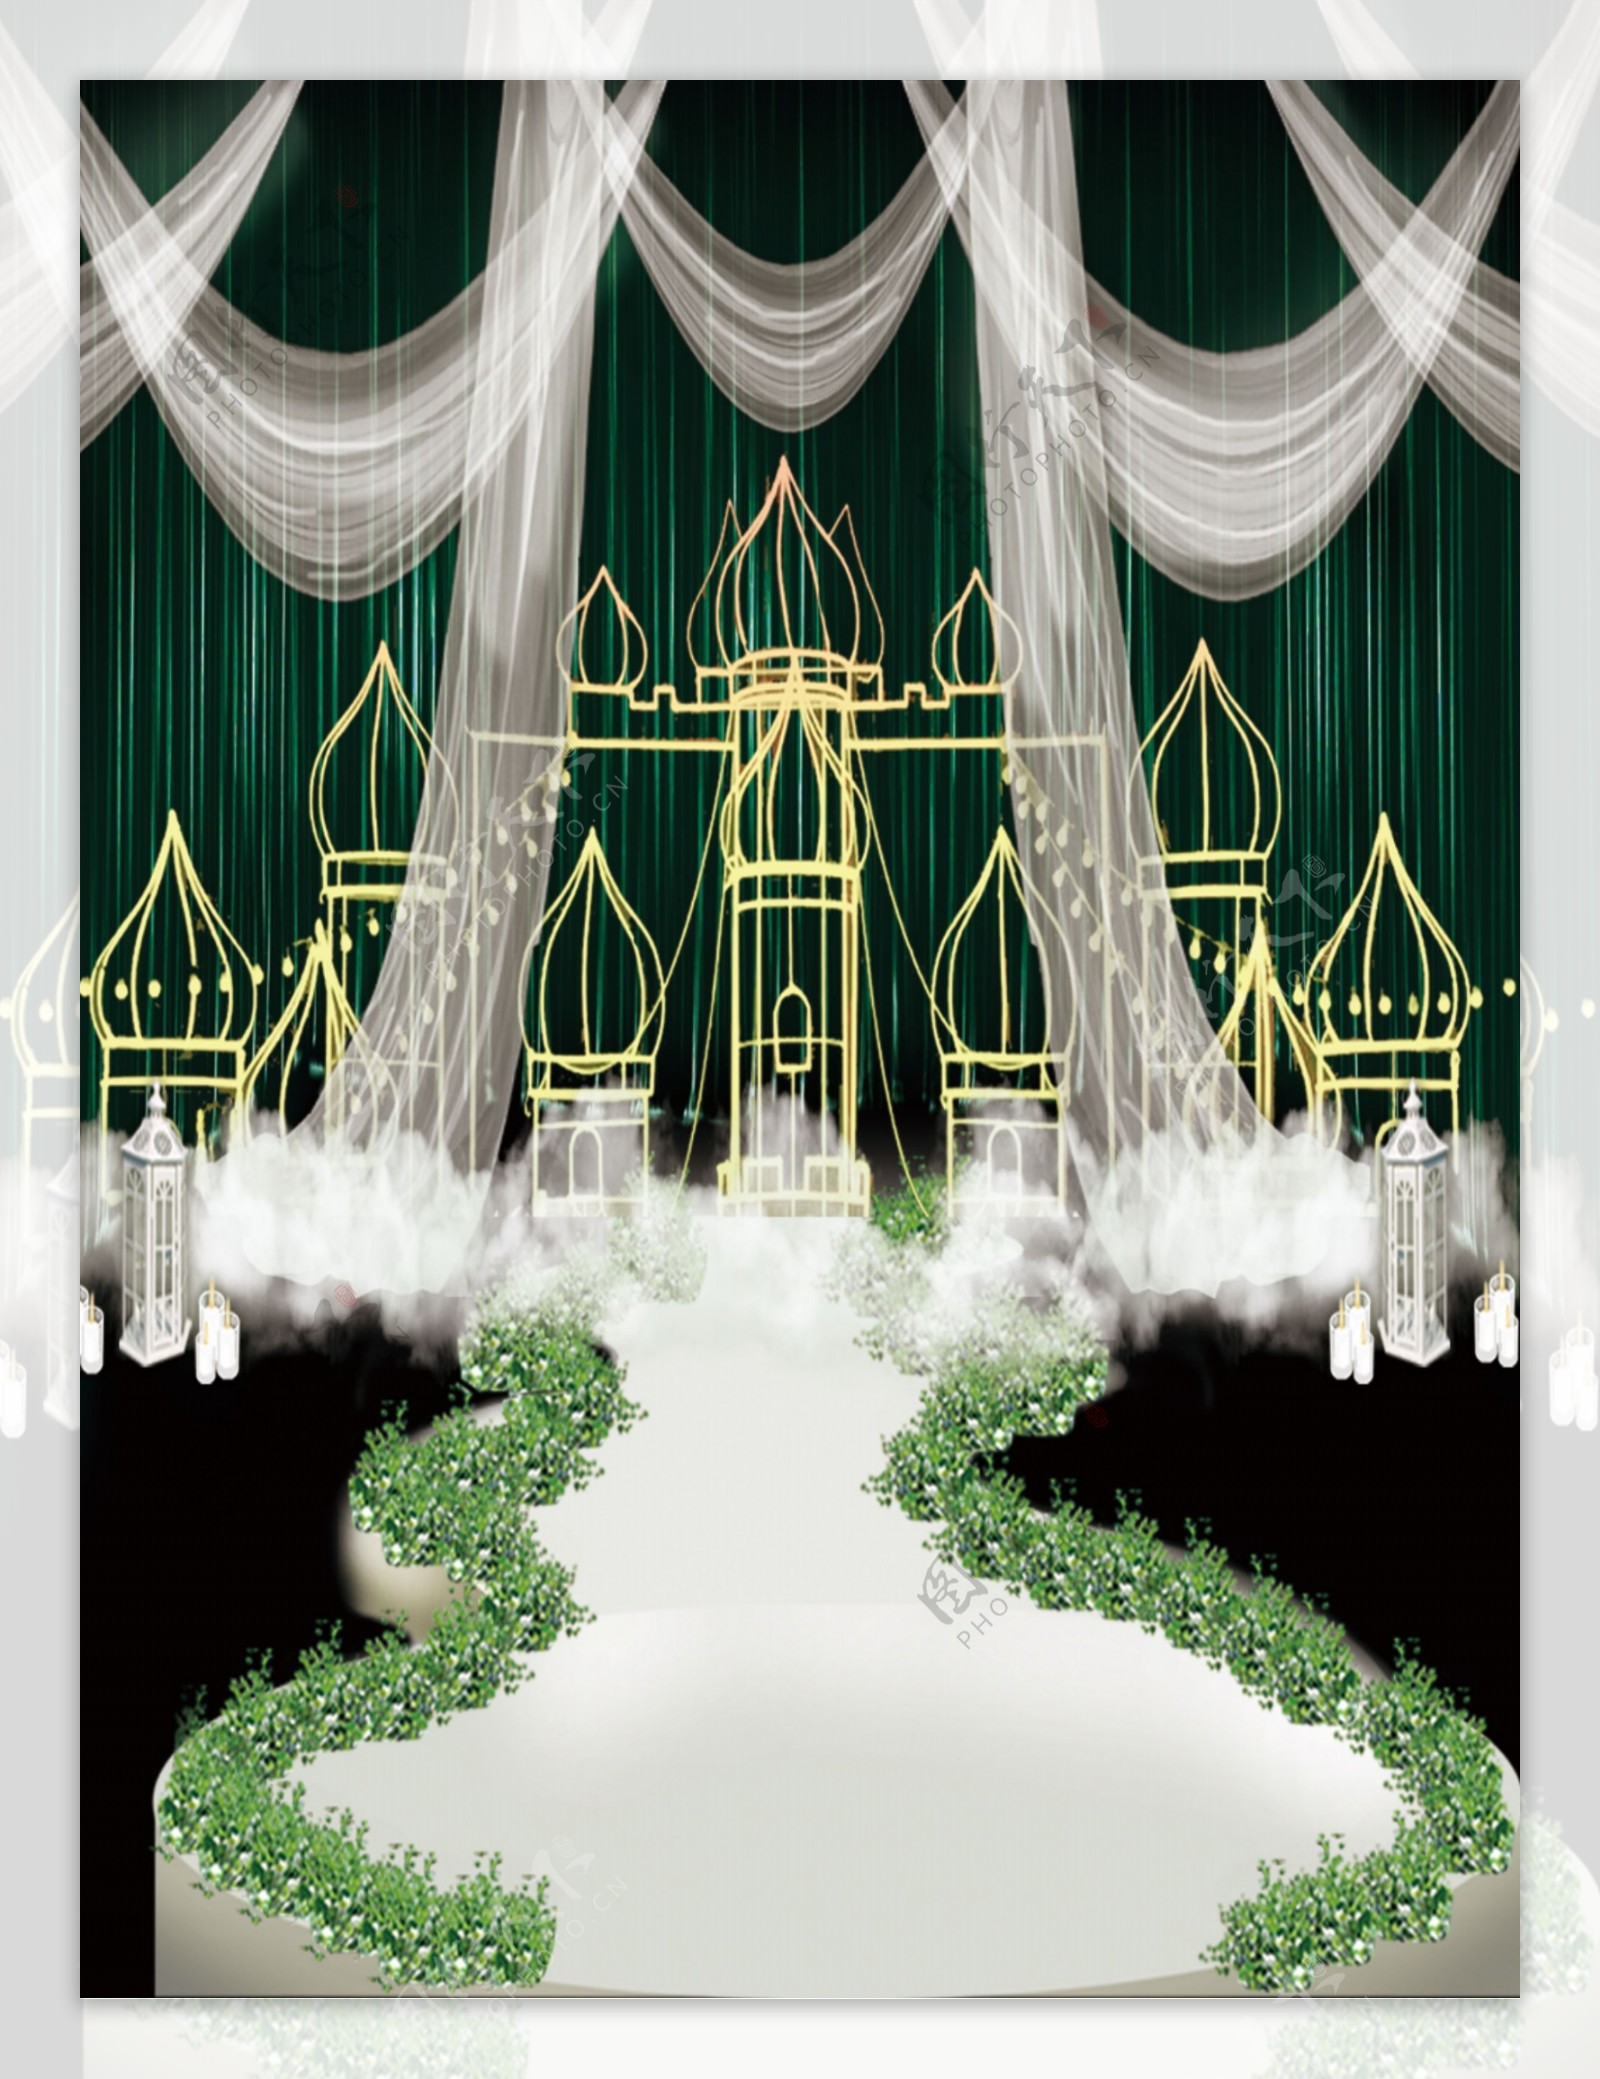 梦幻墨绿帷幔城堡云朵婚礼设计效果图